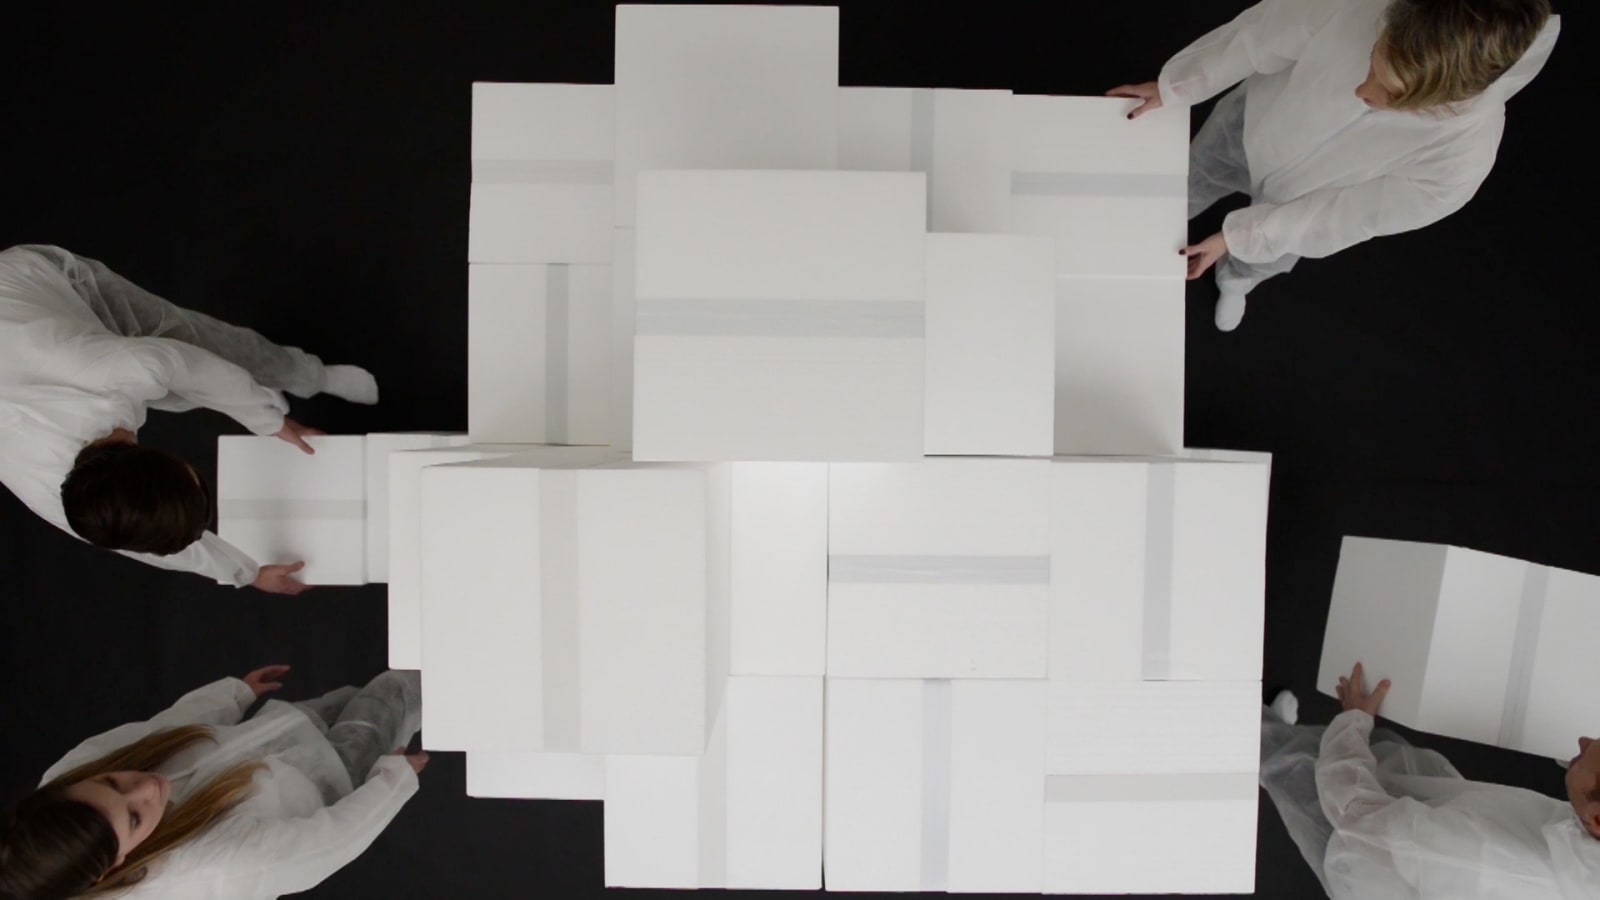 Roland Biermann, white cube / white wall, 2014